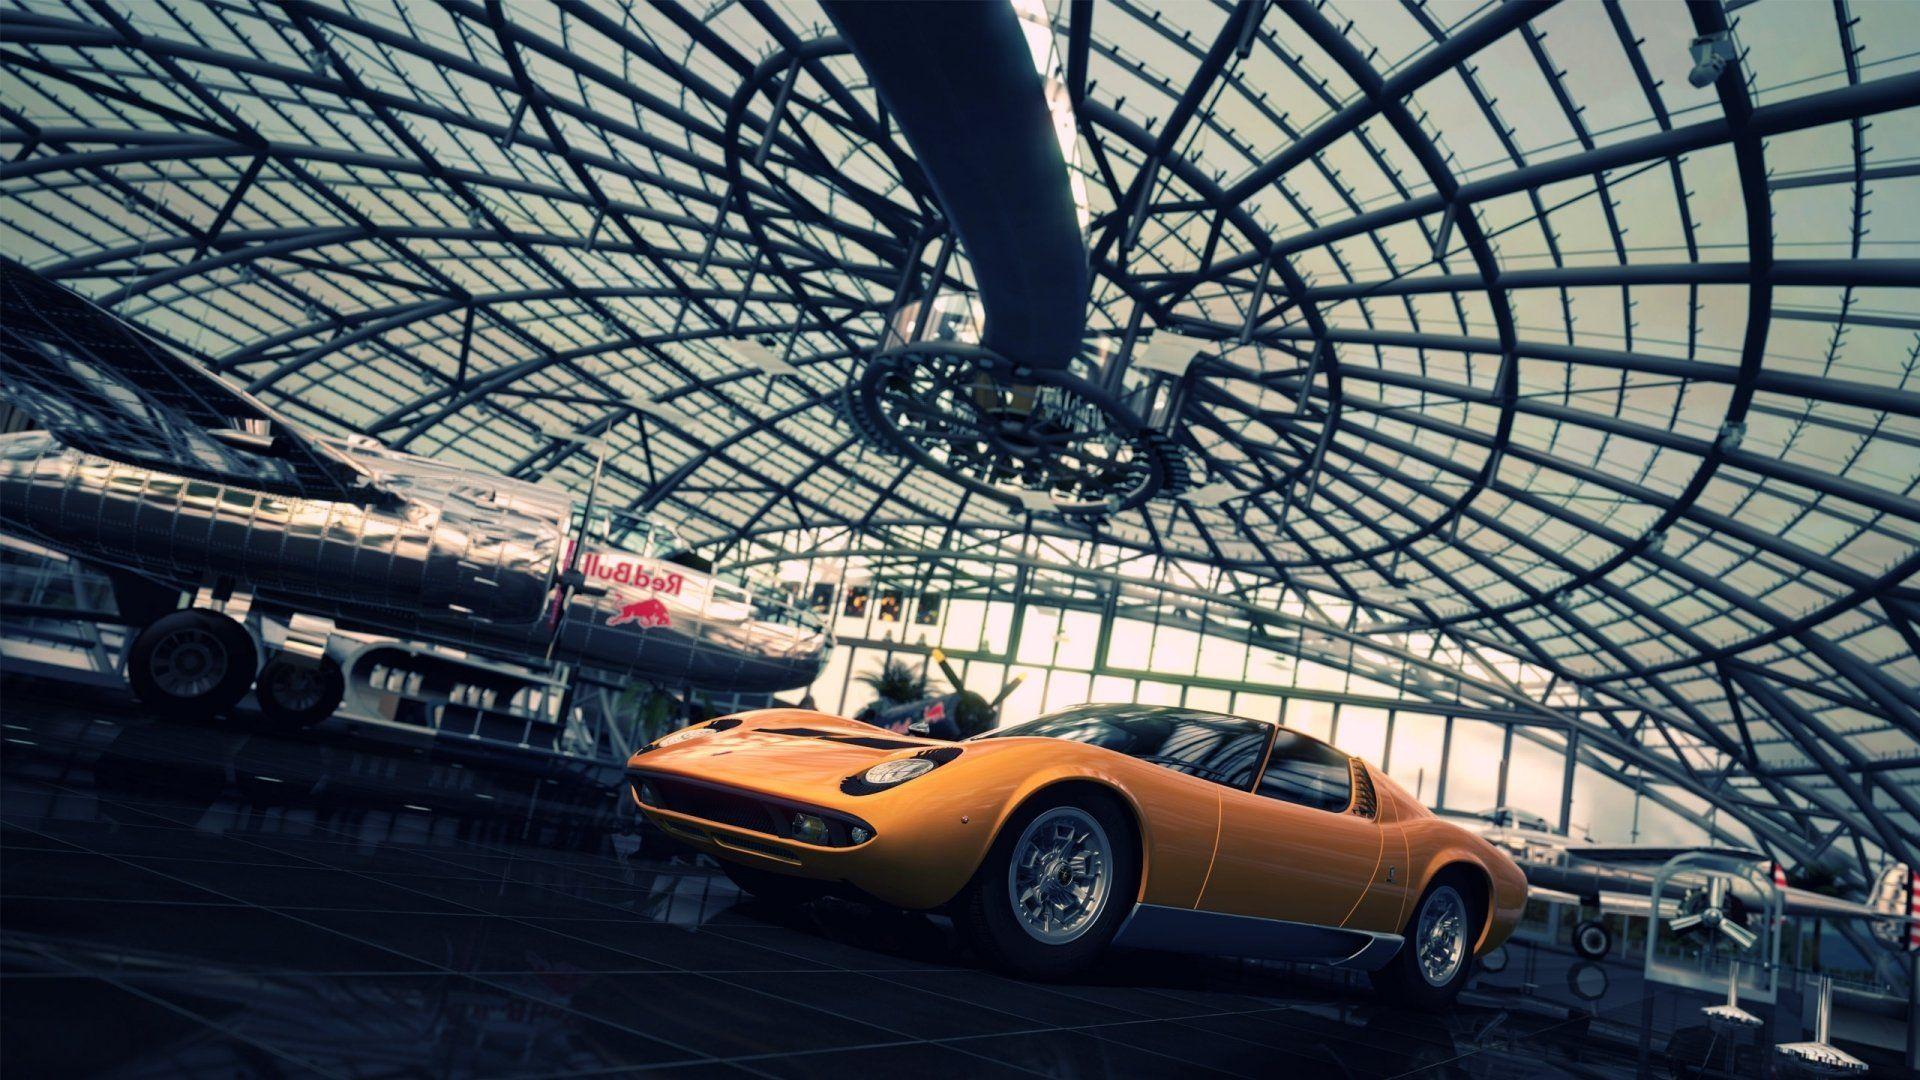 Lamborghini Miura HD Wallpaper and Background Image